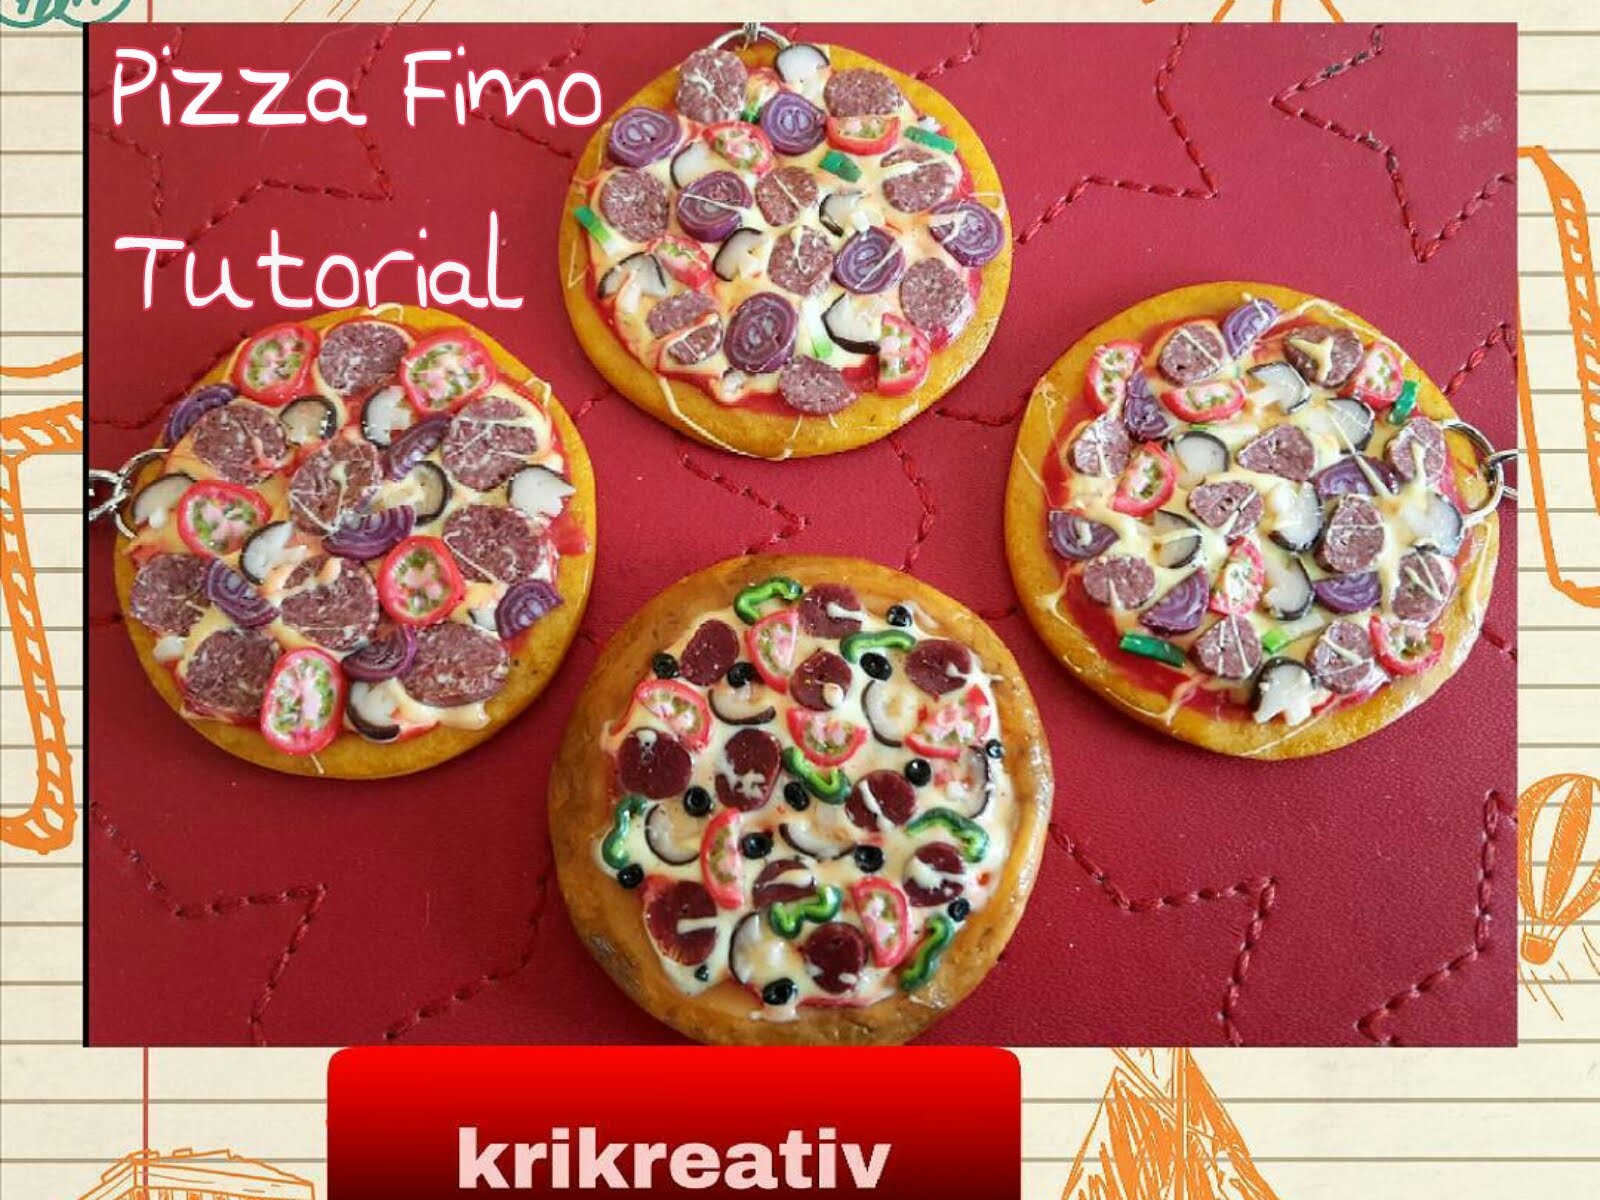 Pizza-Schlüsselanhänger aus Fimo , Tutorial -polymer clay von Krikreativ,